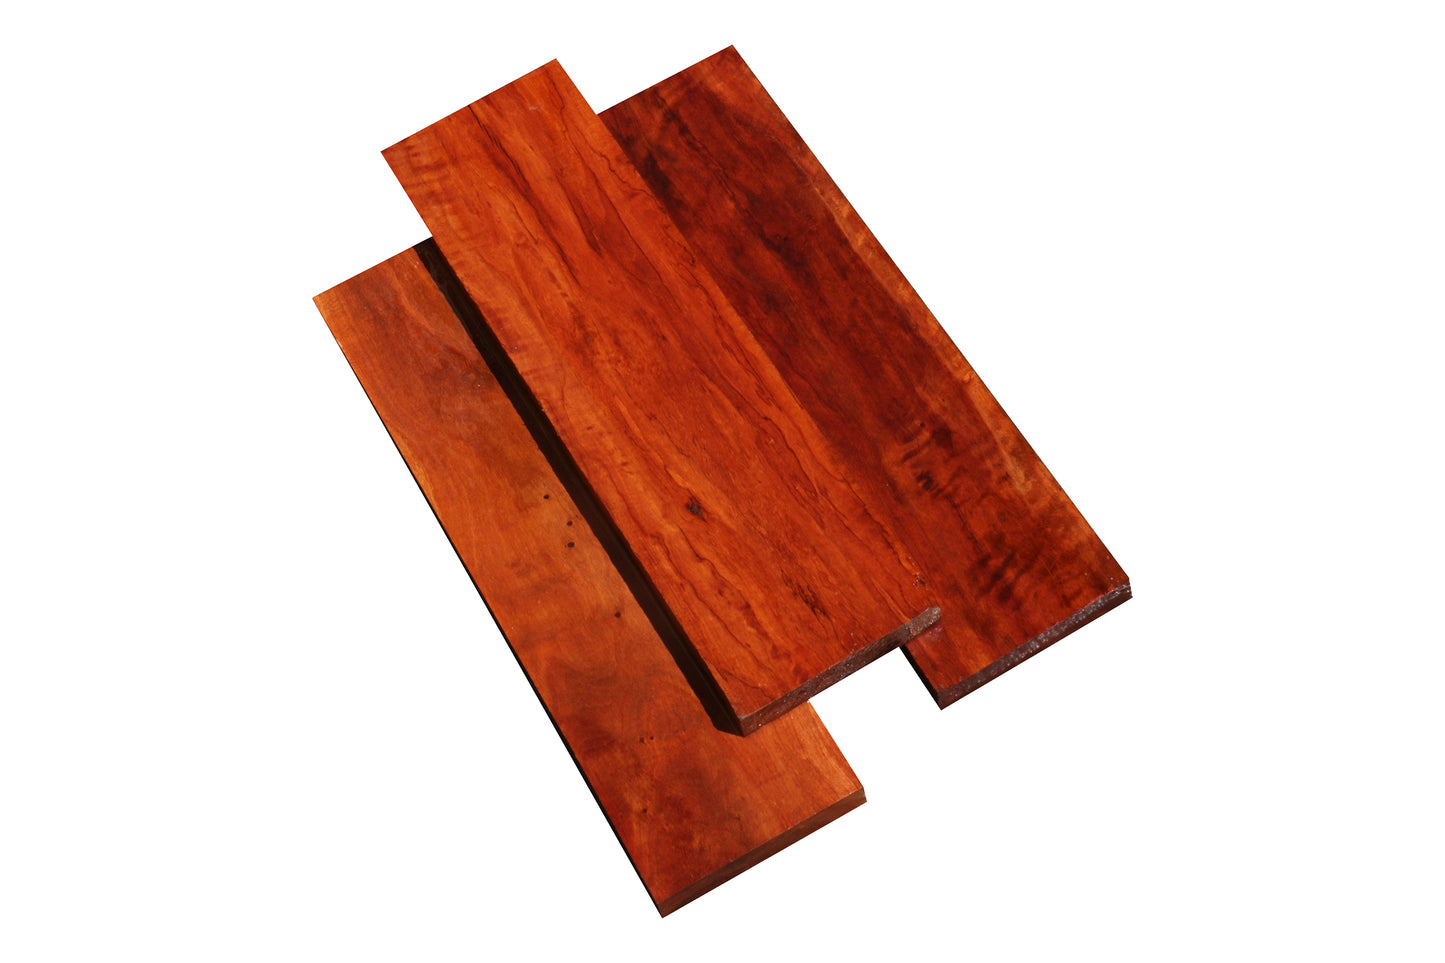 Rambutan Lumber (18" x 5" x 1")